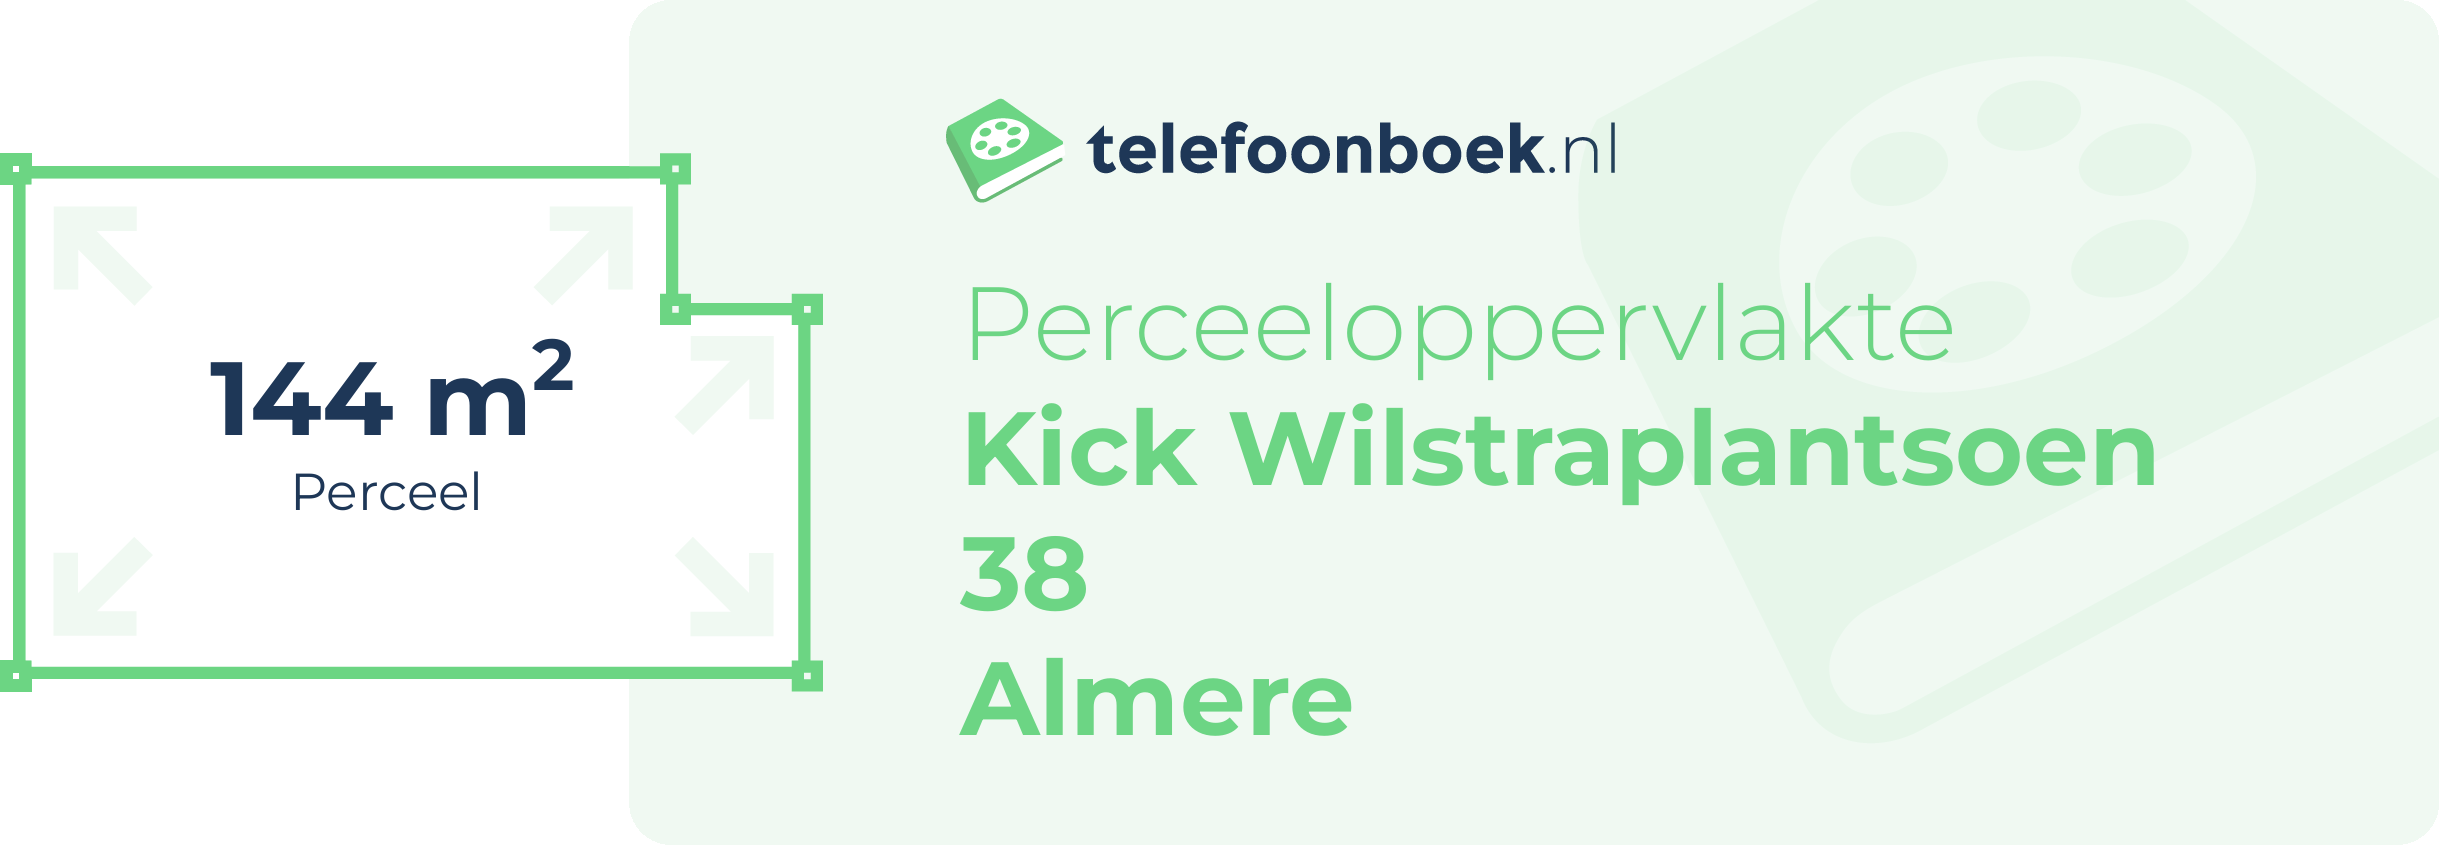 Perceeloppervlakte Kick Wilstraplantsoen 38 Almere